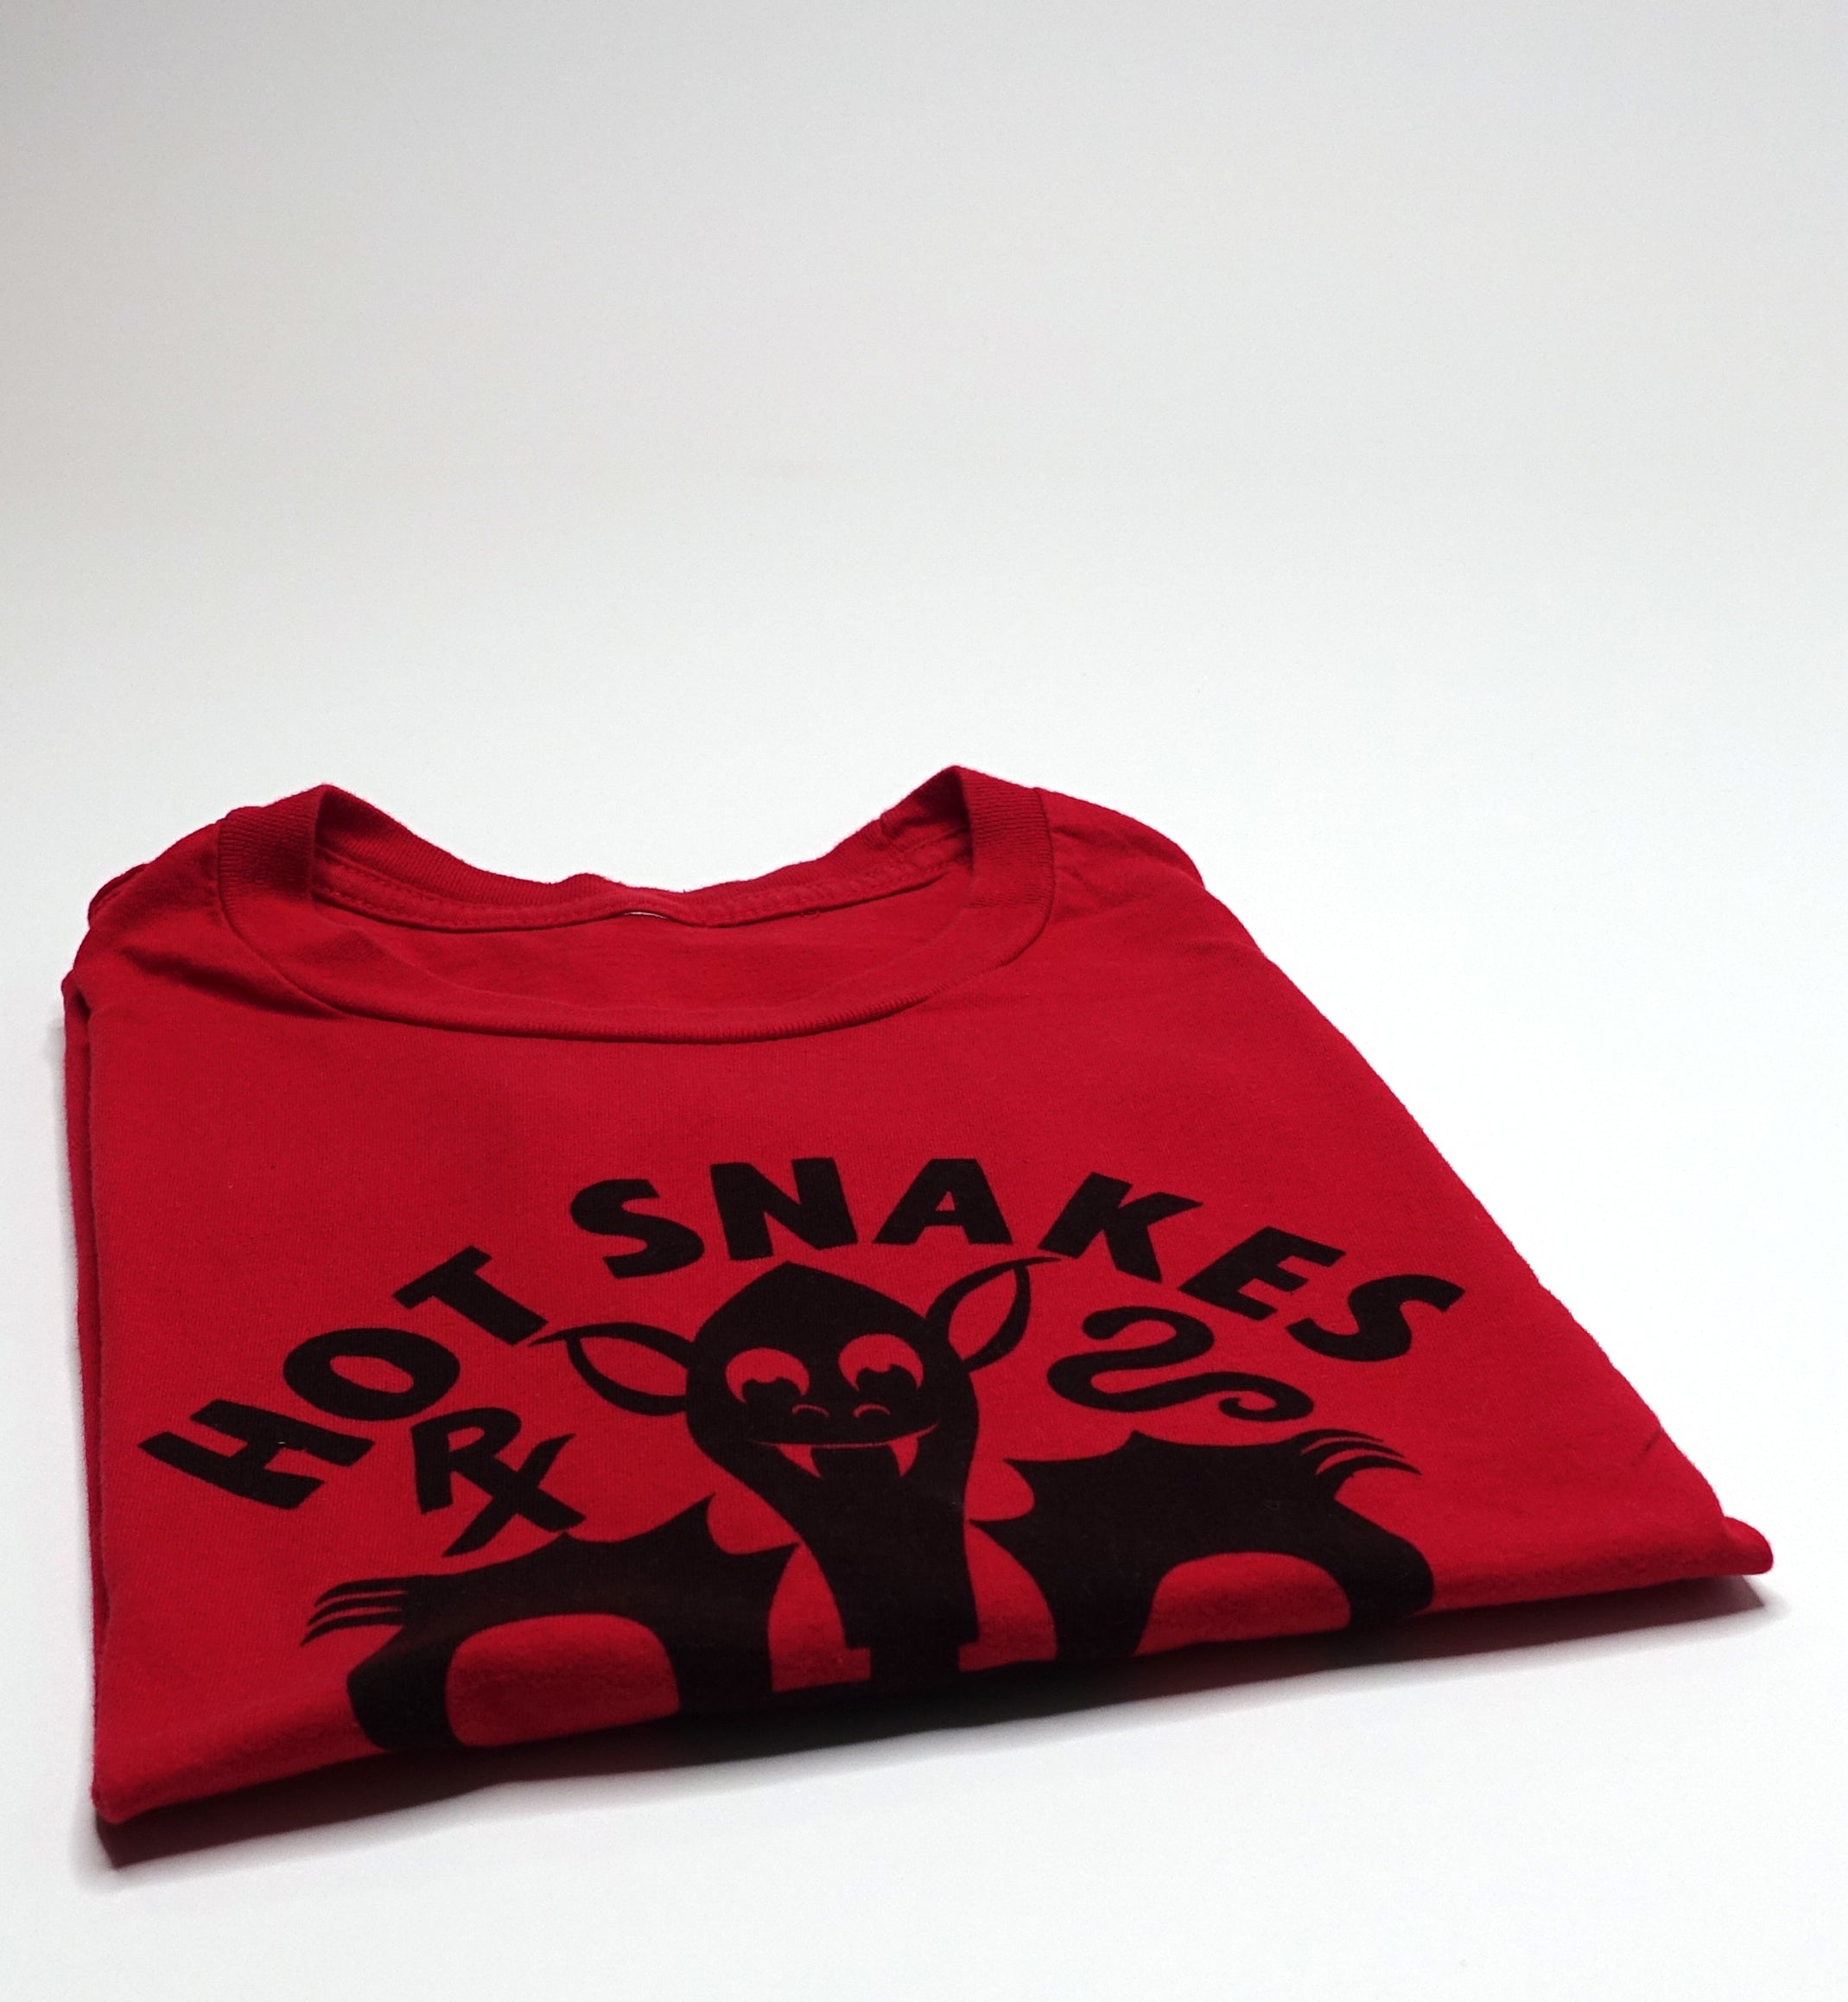 Hot Snakes - Bat Man 2005 Tour Shirt Size Medium